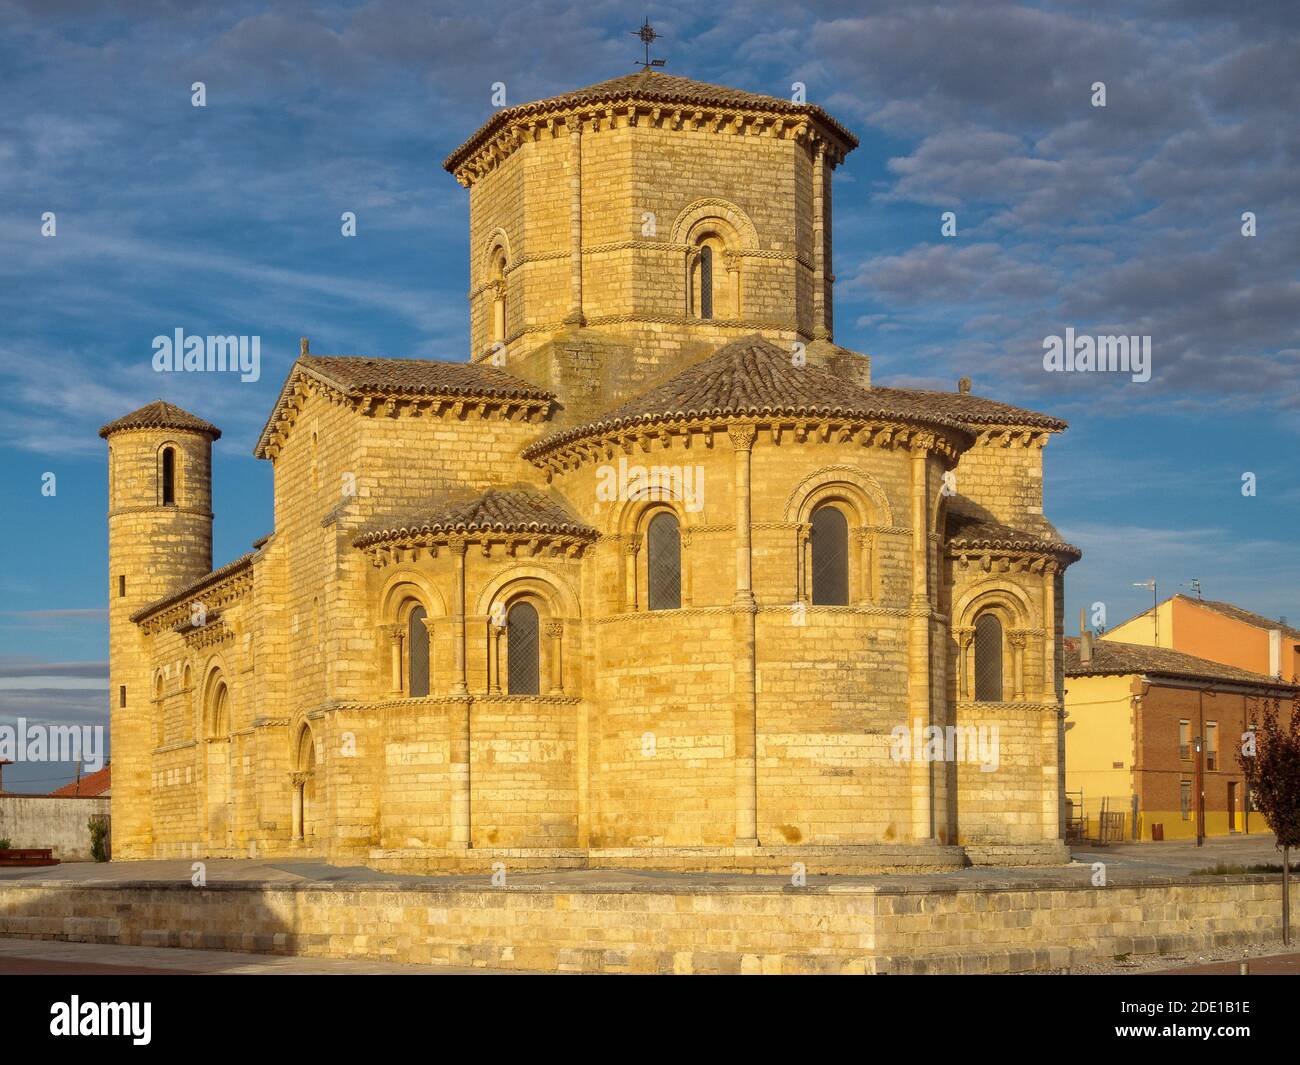 Die romanische Kirche von Saint Martin von der Morgensonne beleuchtet - Fromista, Kastilien und Leon, Spanien Stockfoto